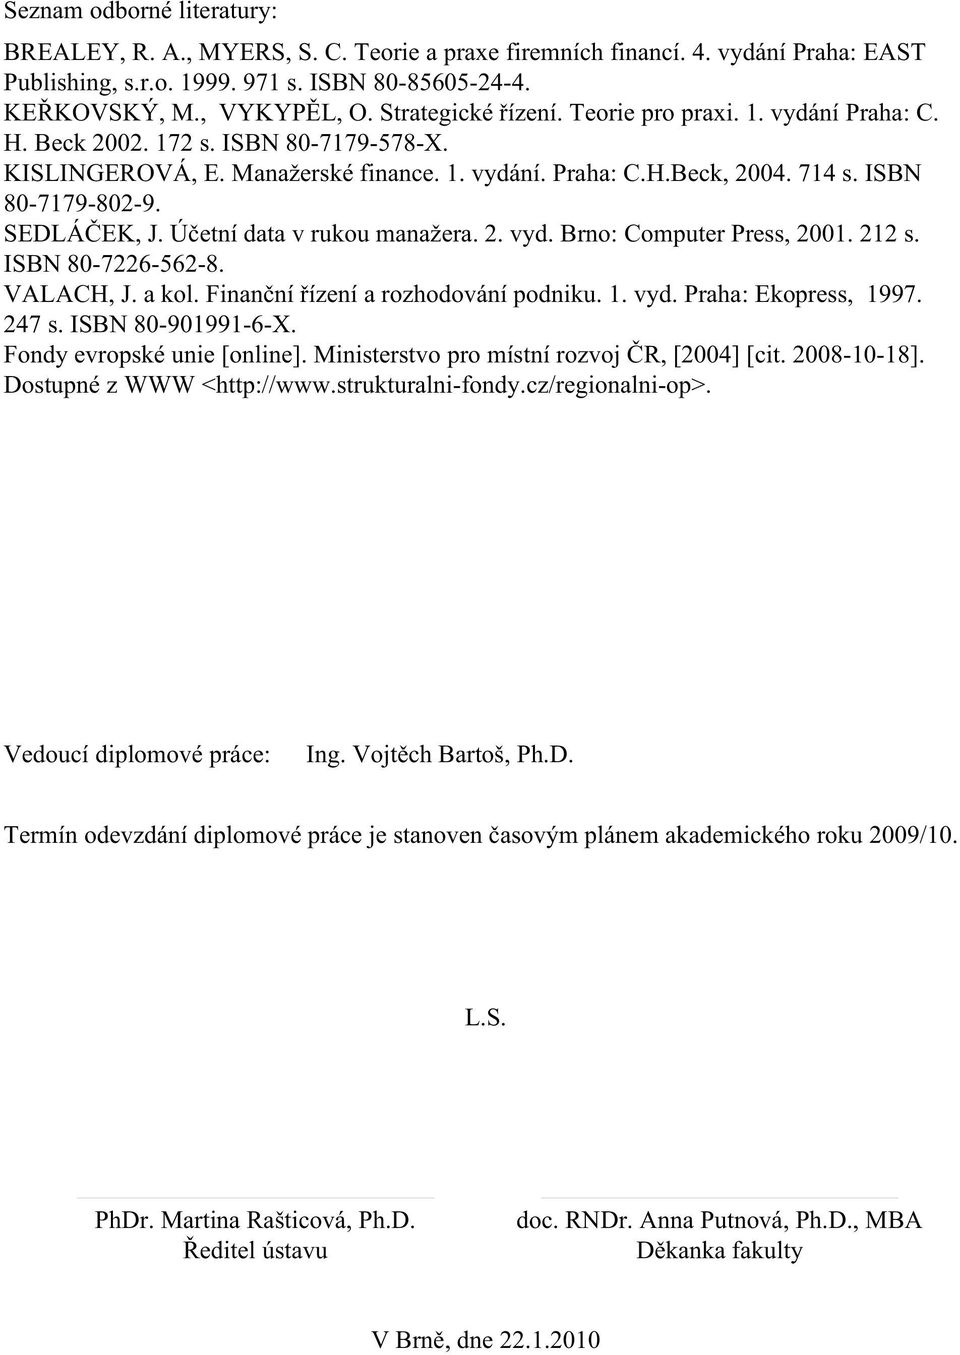 SEDLÁČEK, J. Účetní data v rukou manažera. 2. vyd. Brno: Computer Press, 2001. 212 s. ISBN 80-7226-562-8. VALACH, J. a kol. Finanční řízení a rozhodování podniku. 1. vyd. Praha: Ekopress, 1997. 247 s.